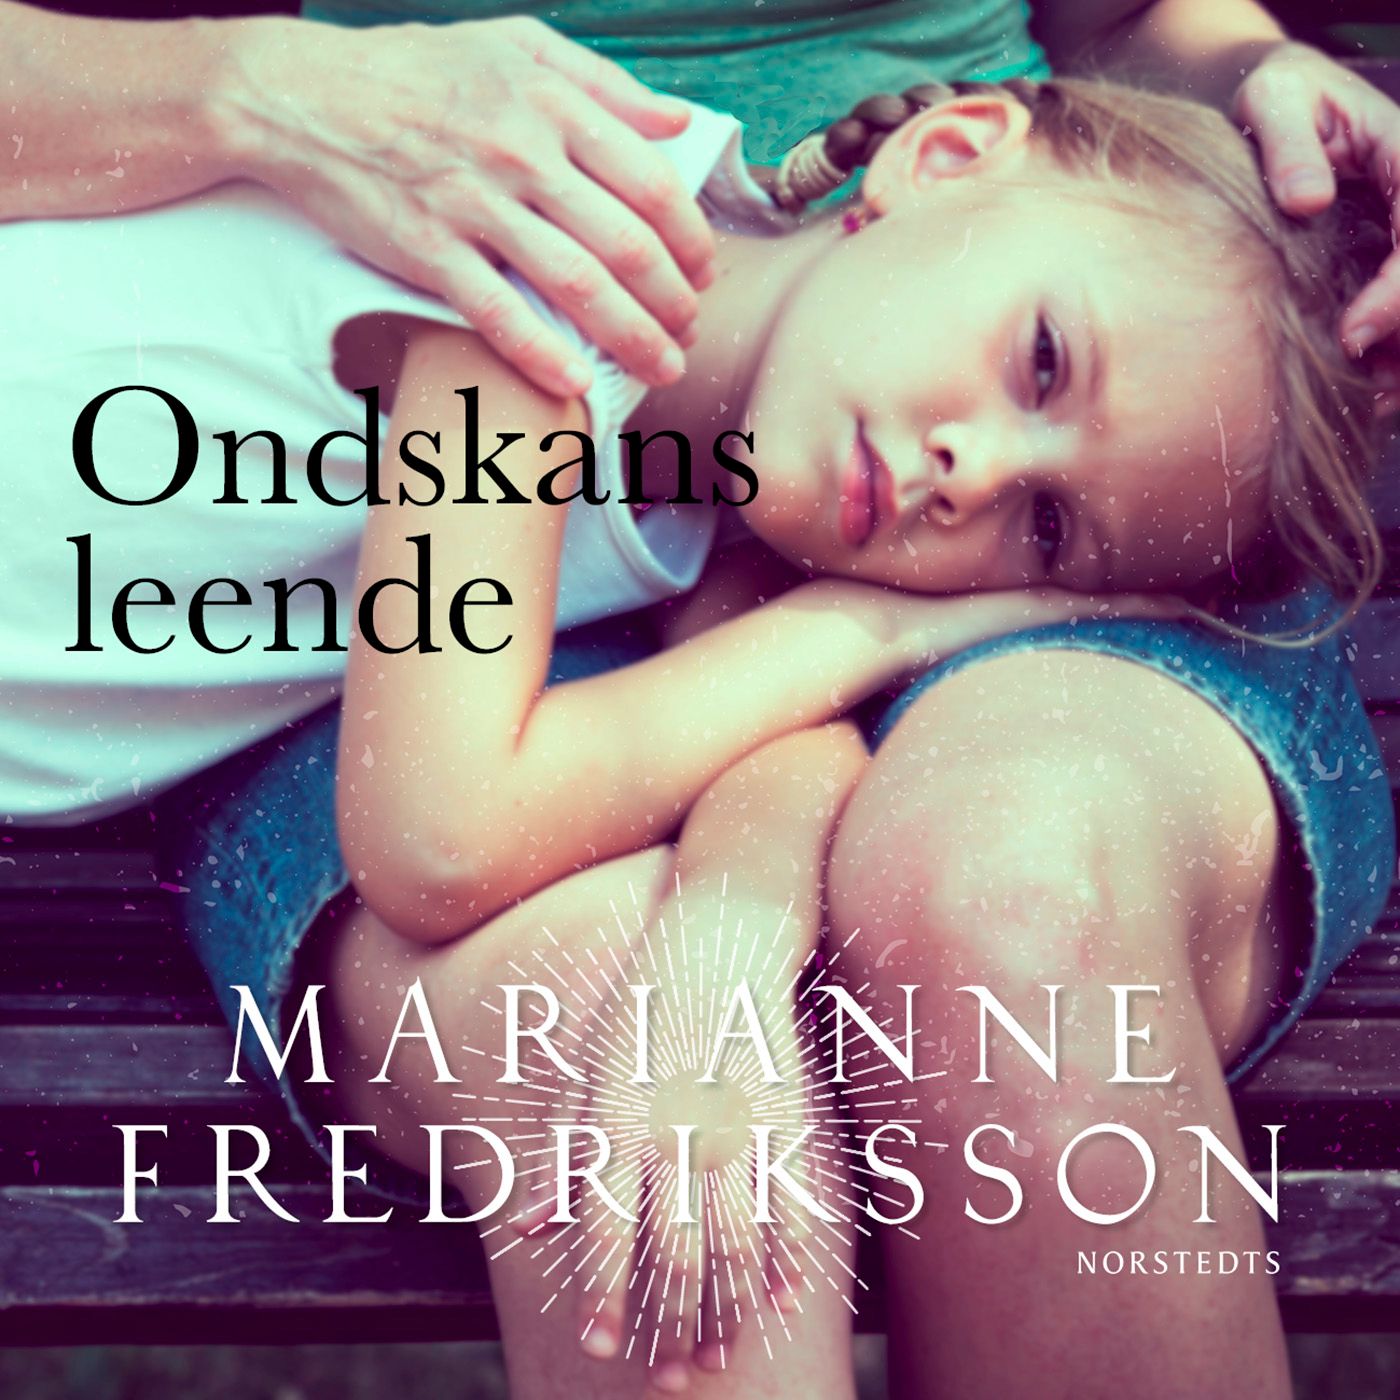 Ondskans leende, audiobook by Marianne Fredriksson